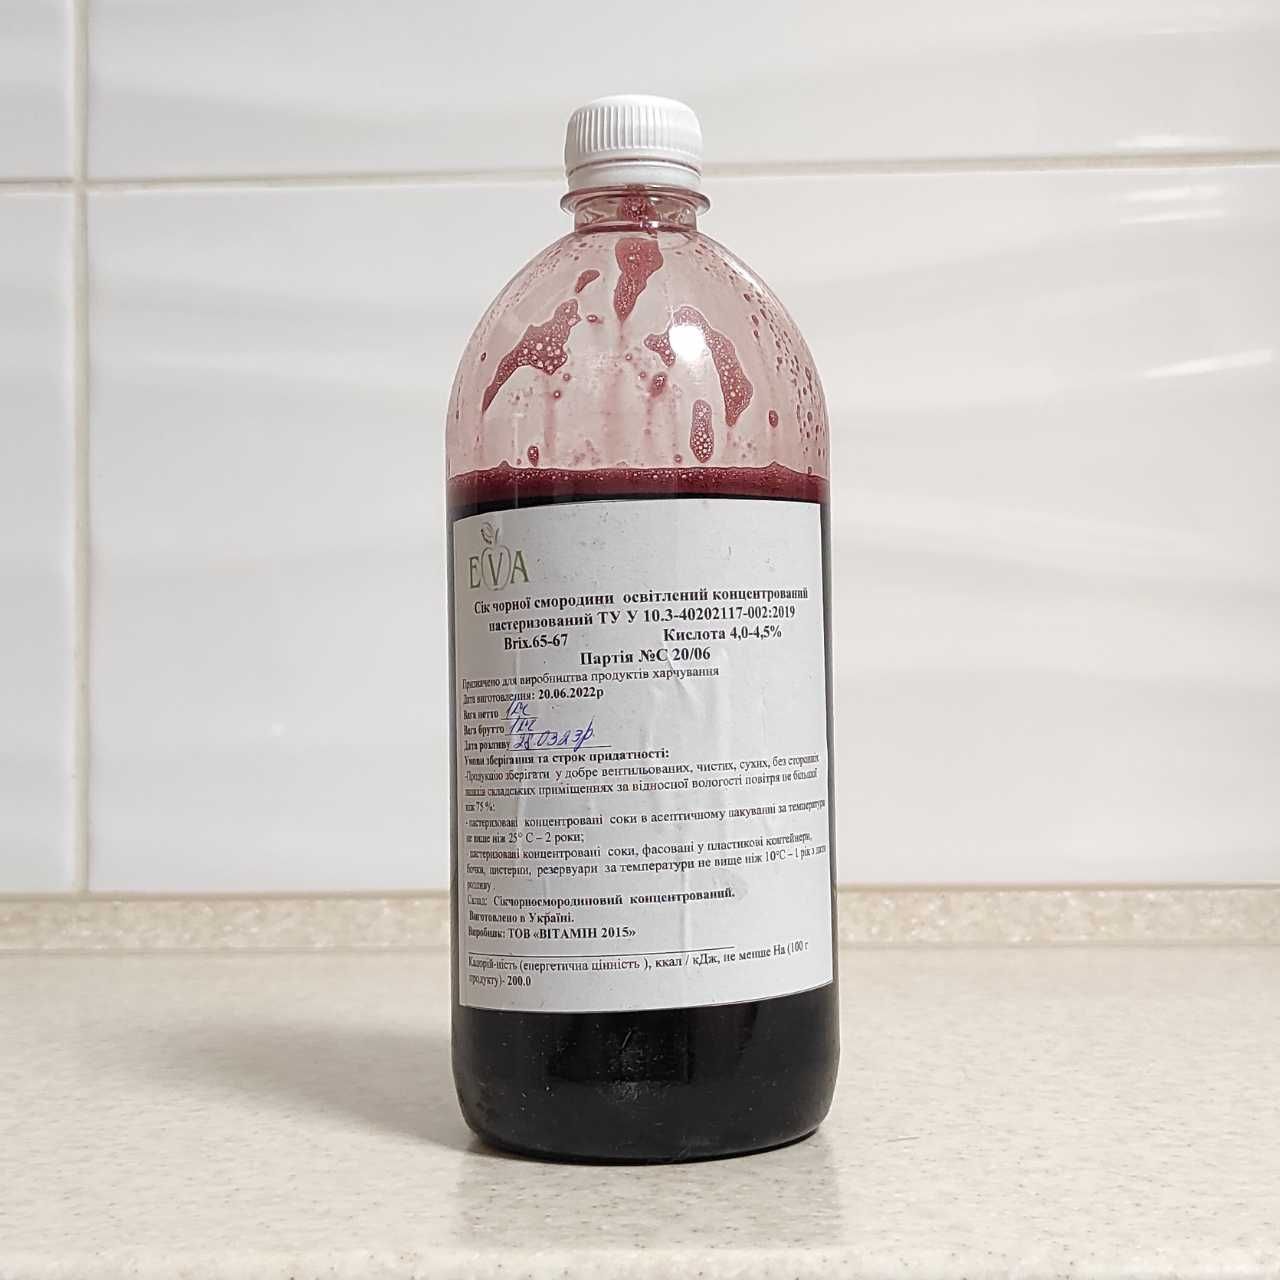 Концентрированный сок черной смородины (65-67 ВХ) бутылка 1 кг/0,76 л